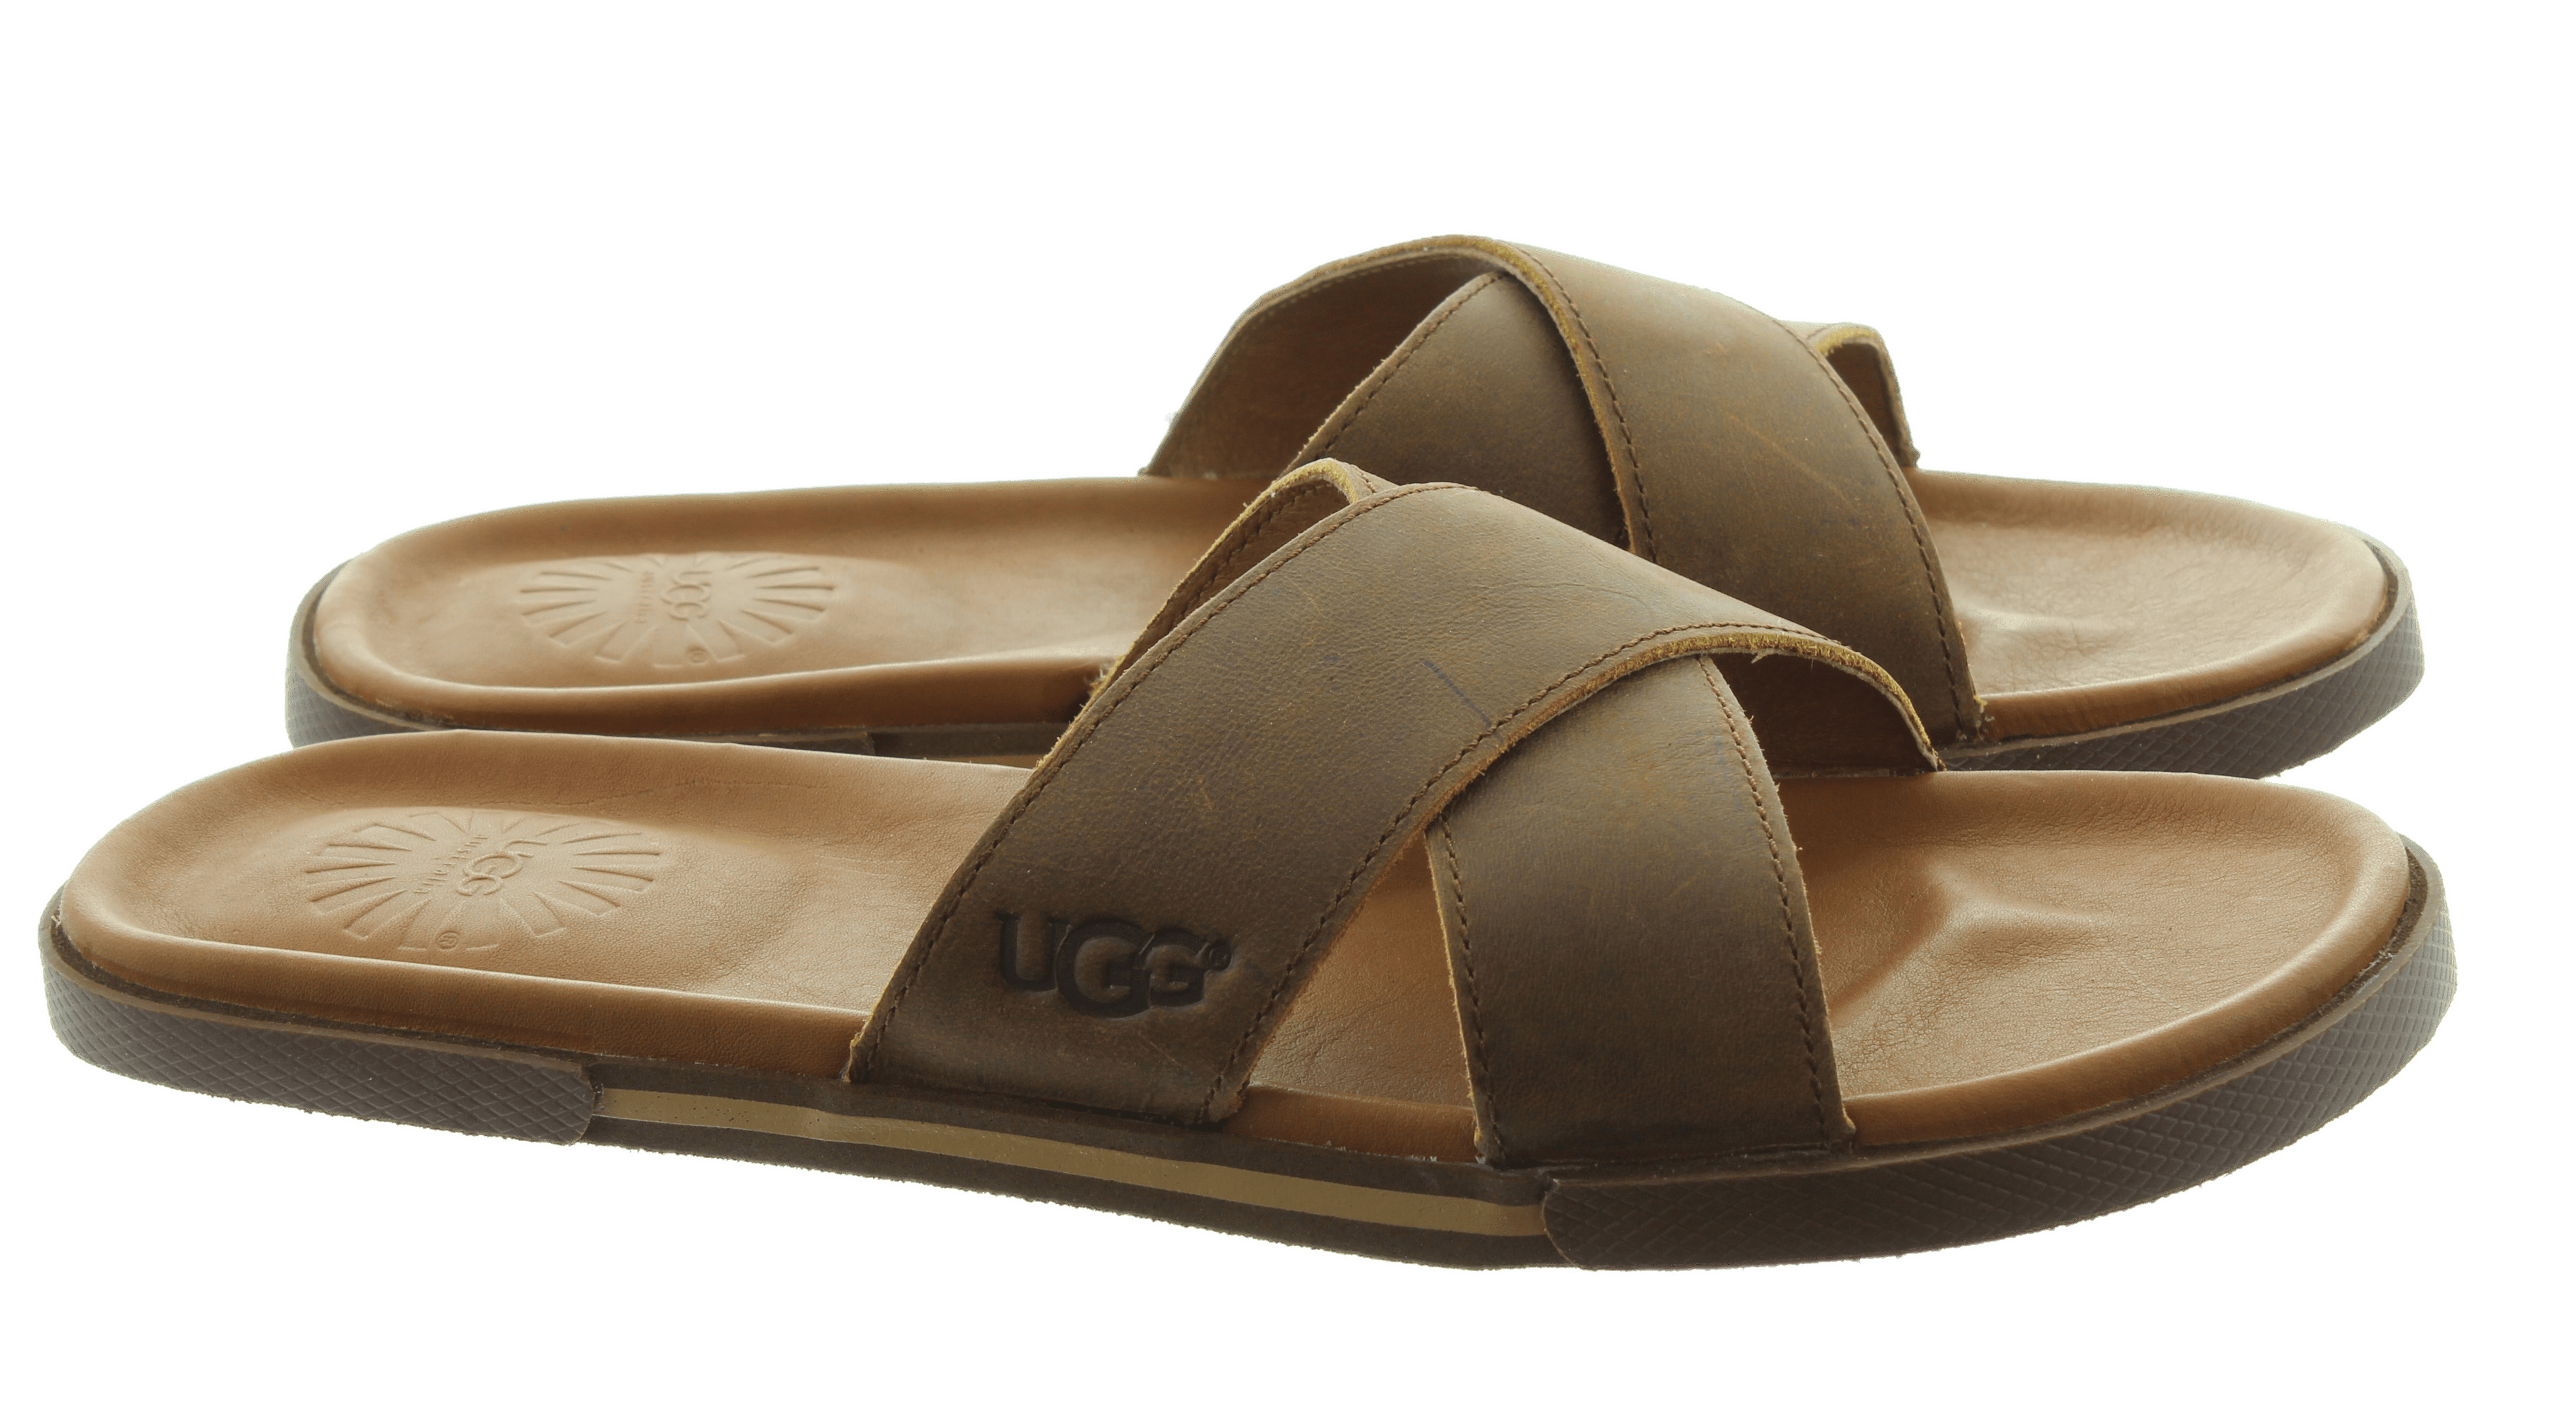 UGG Mens Slide Sandals png icons